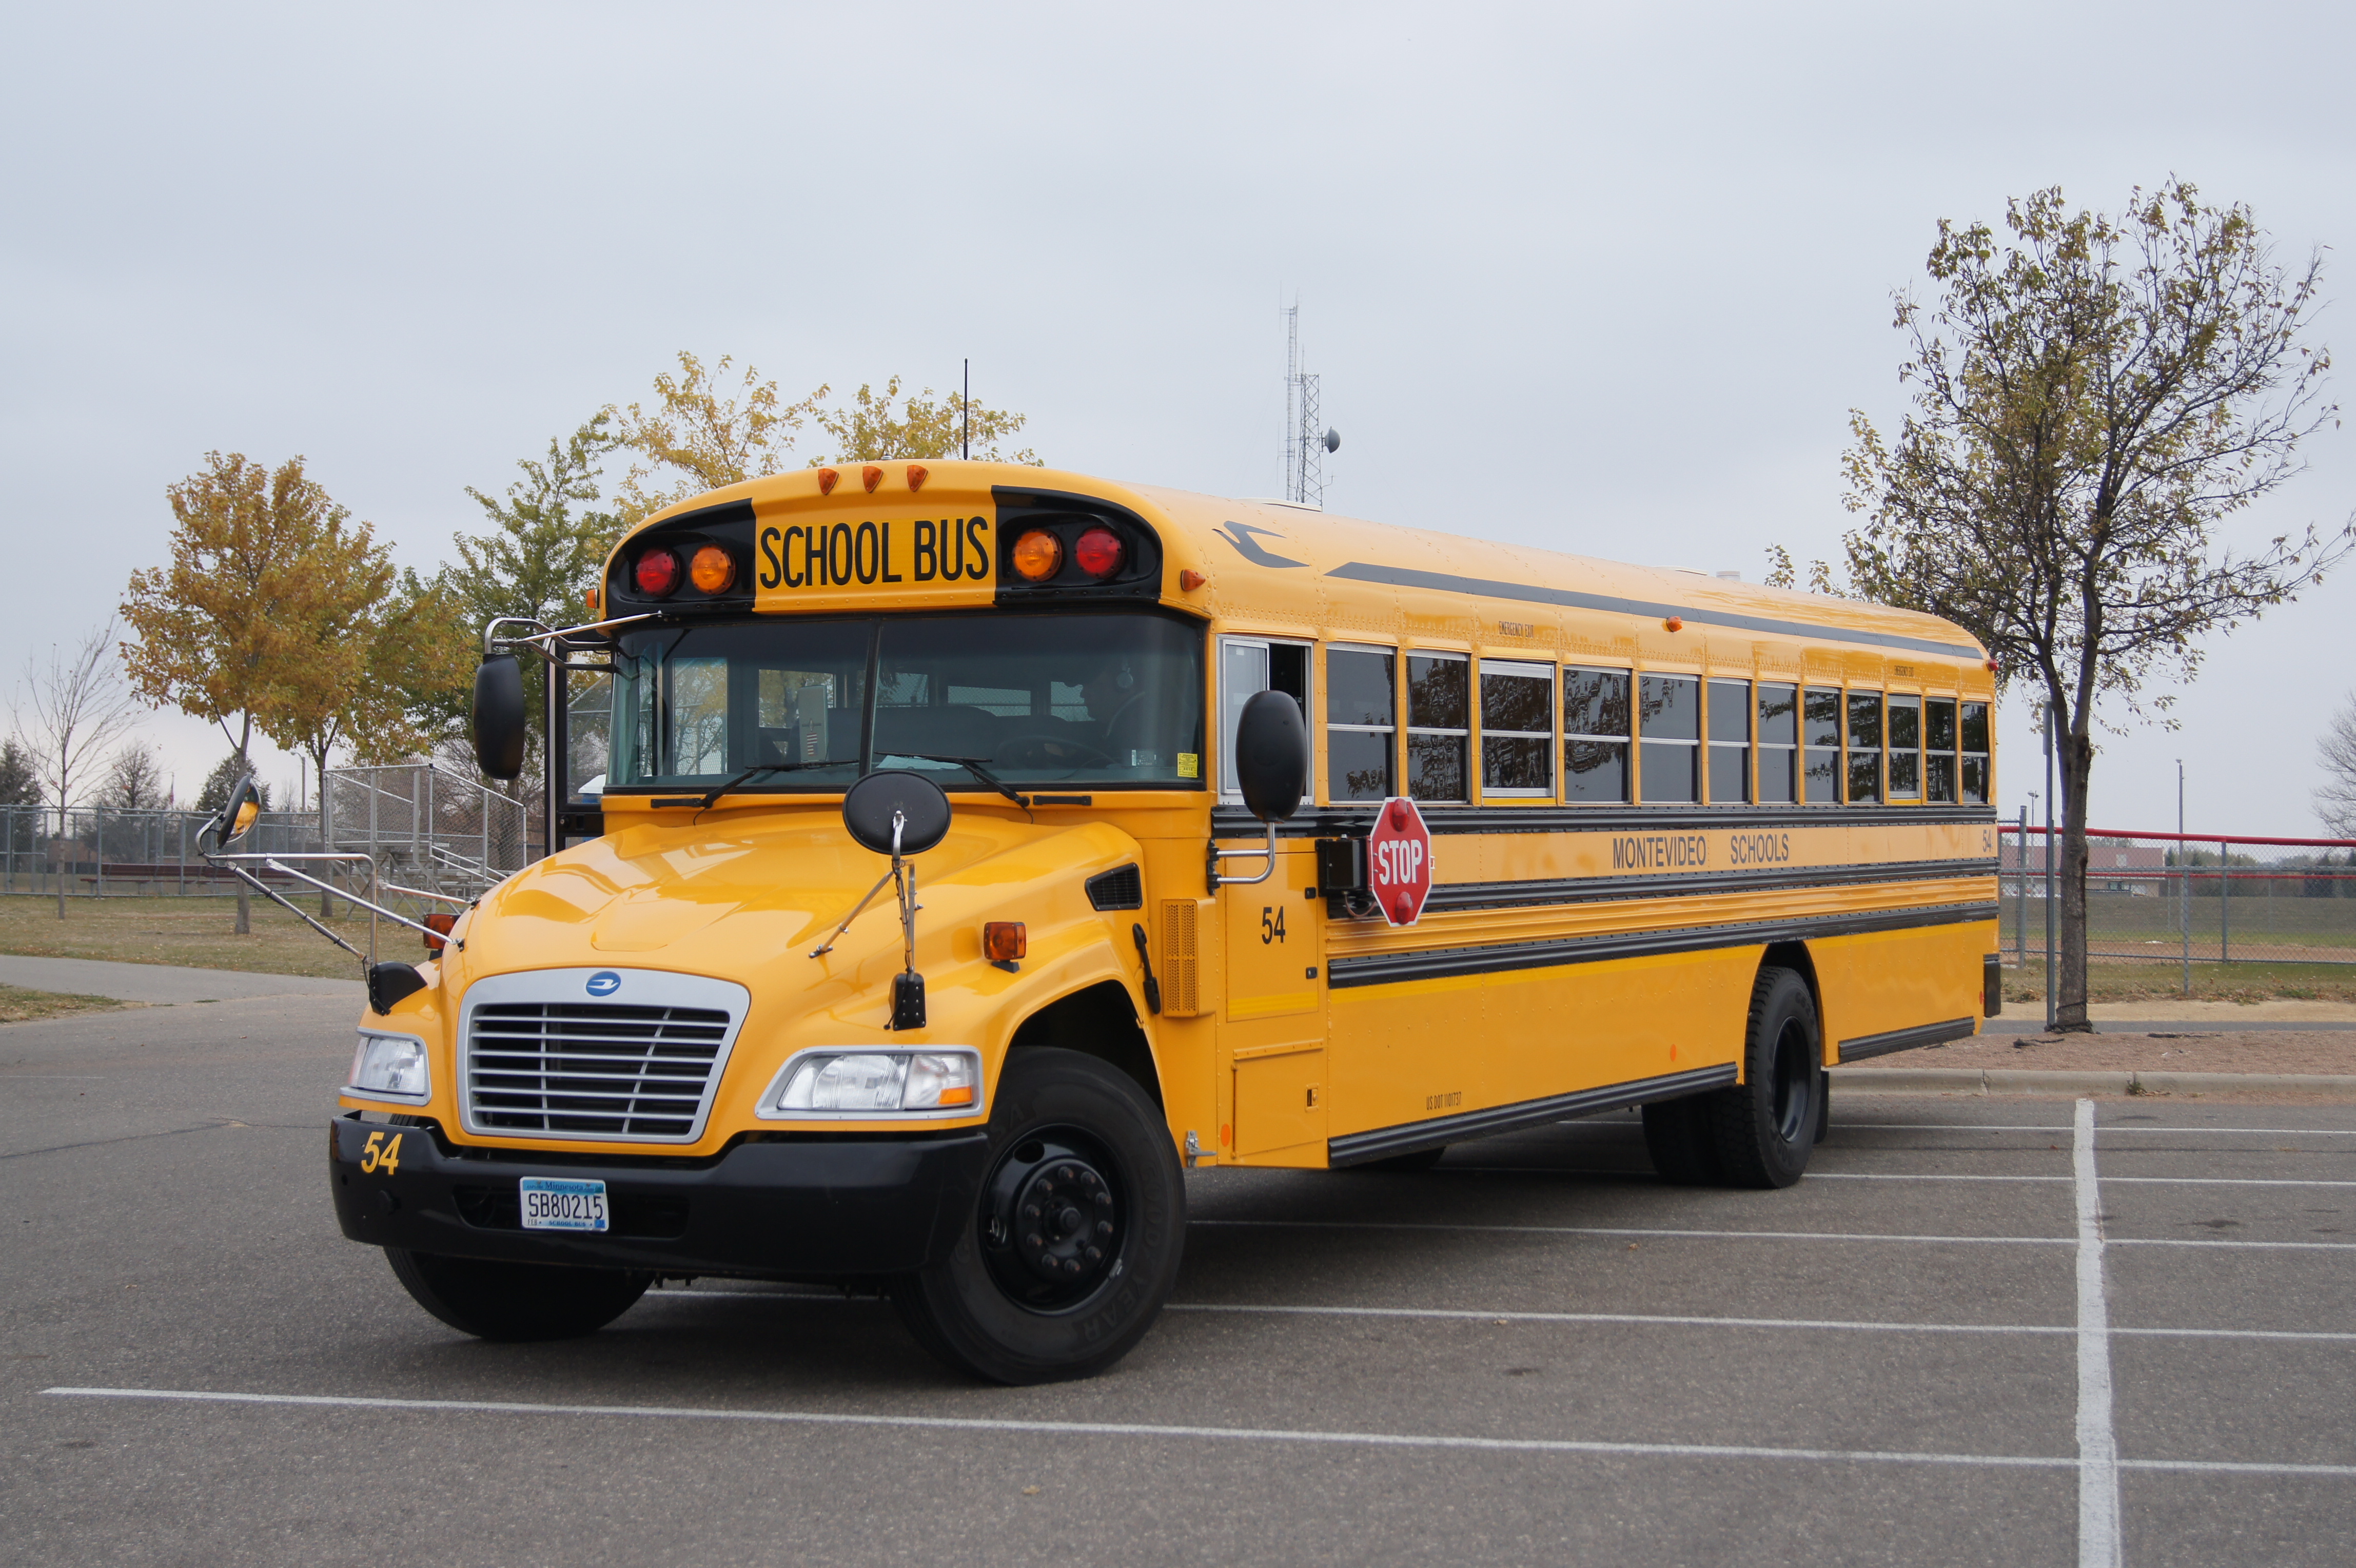 Blue Bird School Bus | Flickr - Photo Sharing!